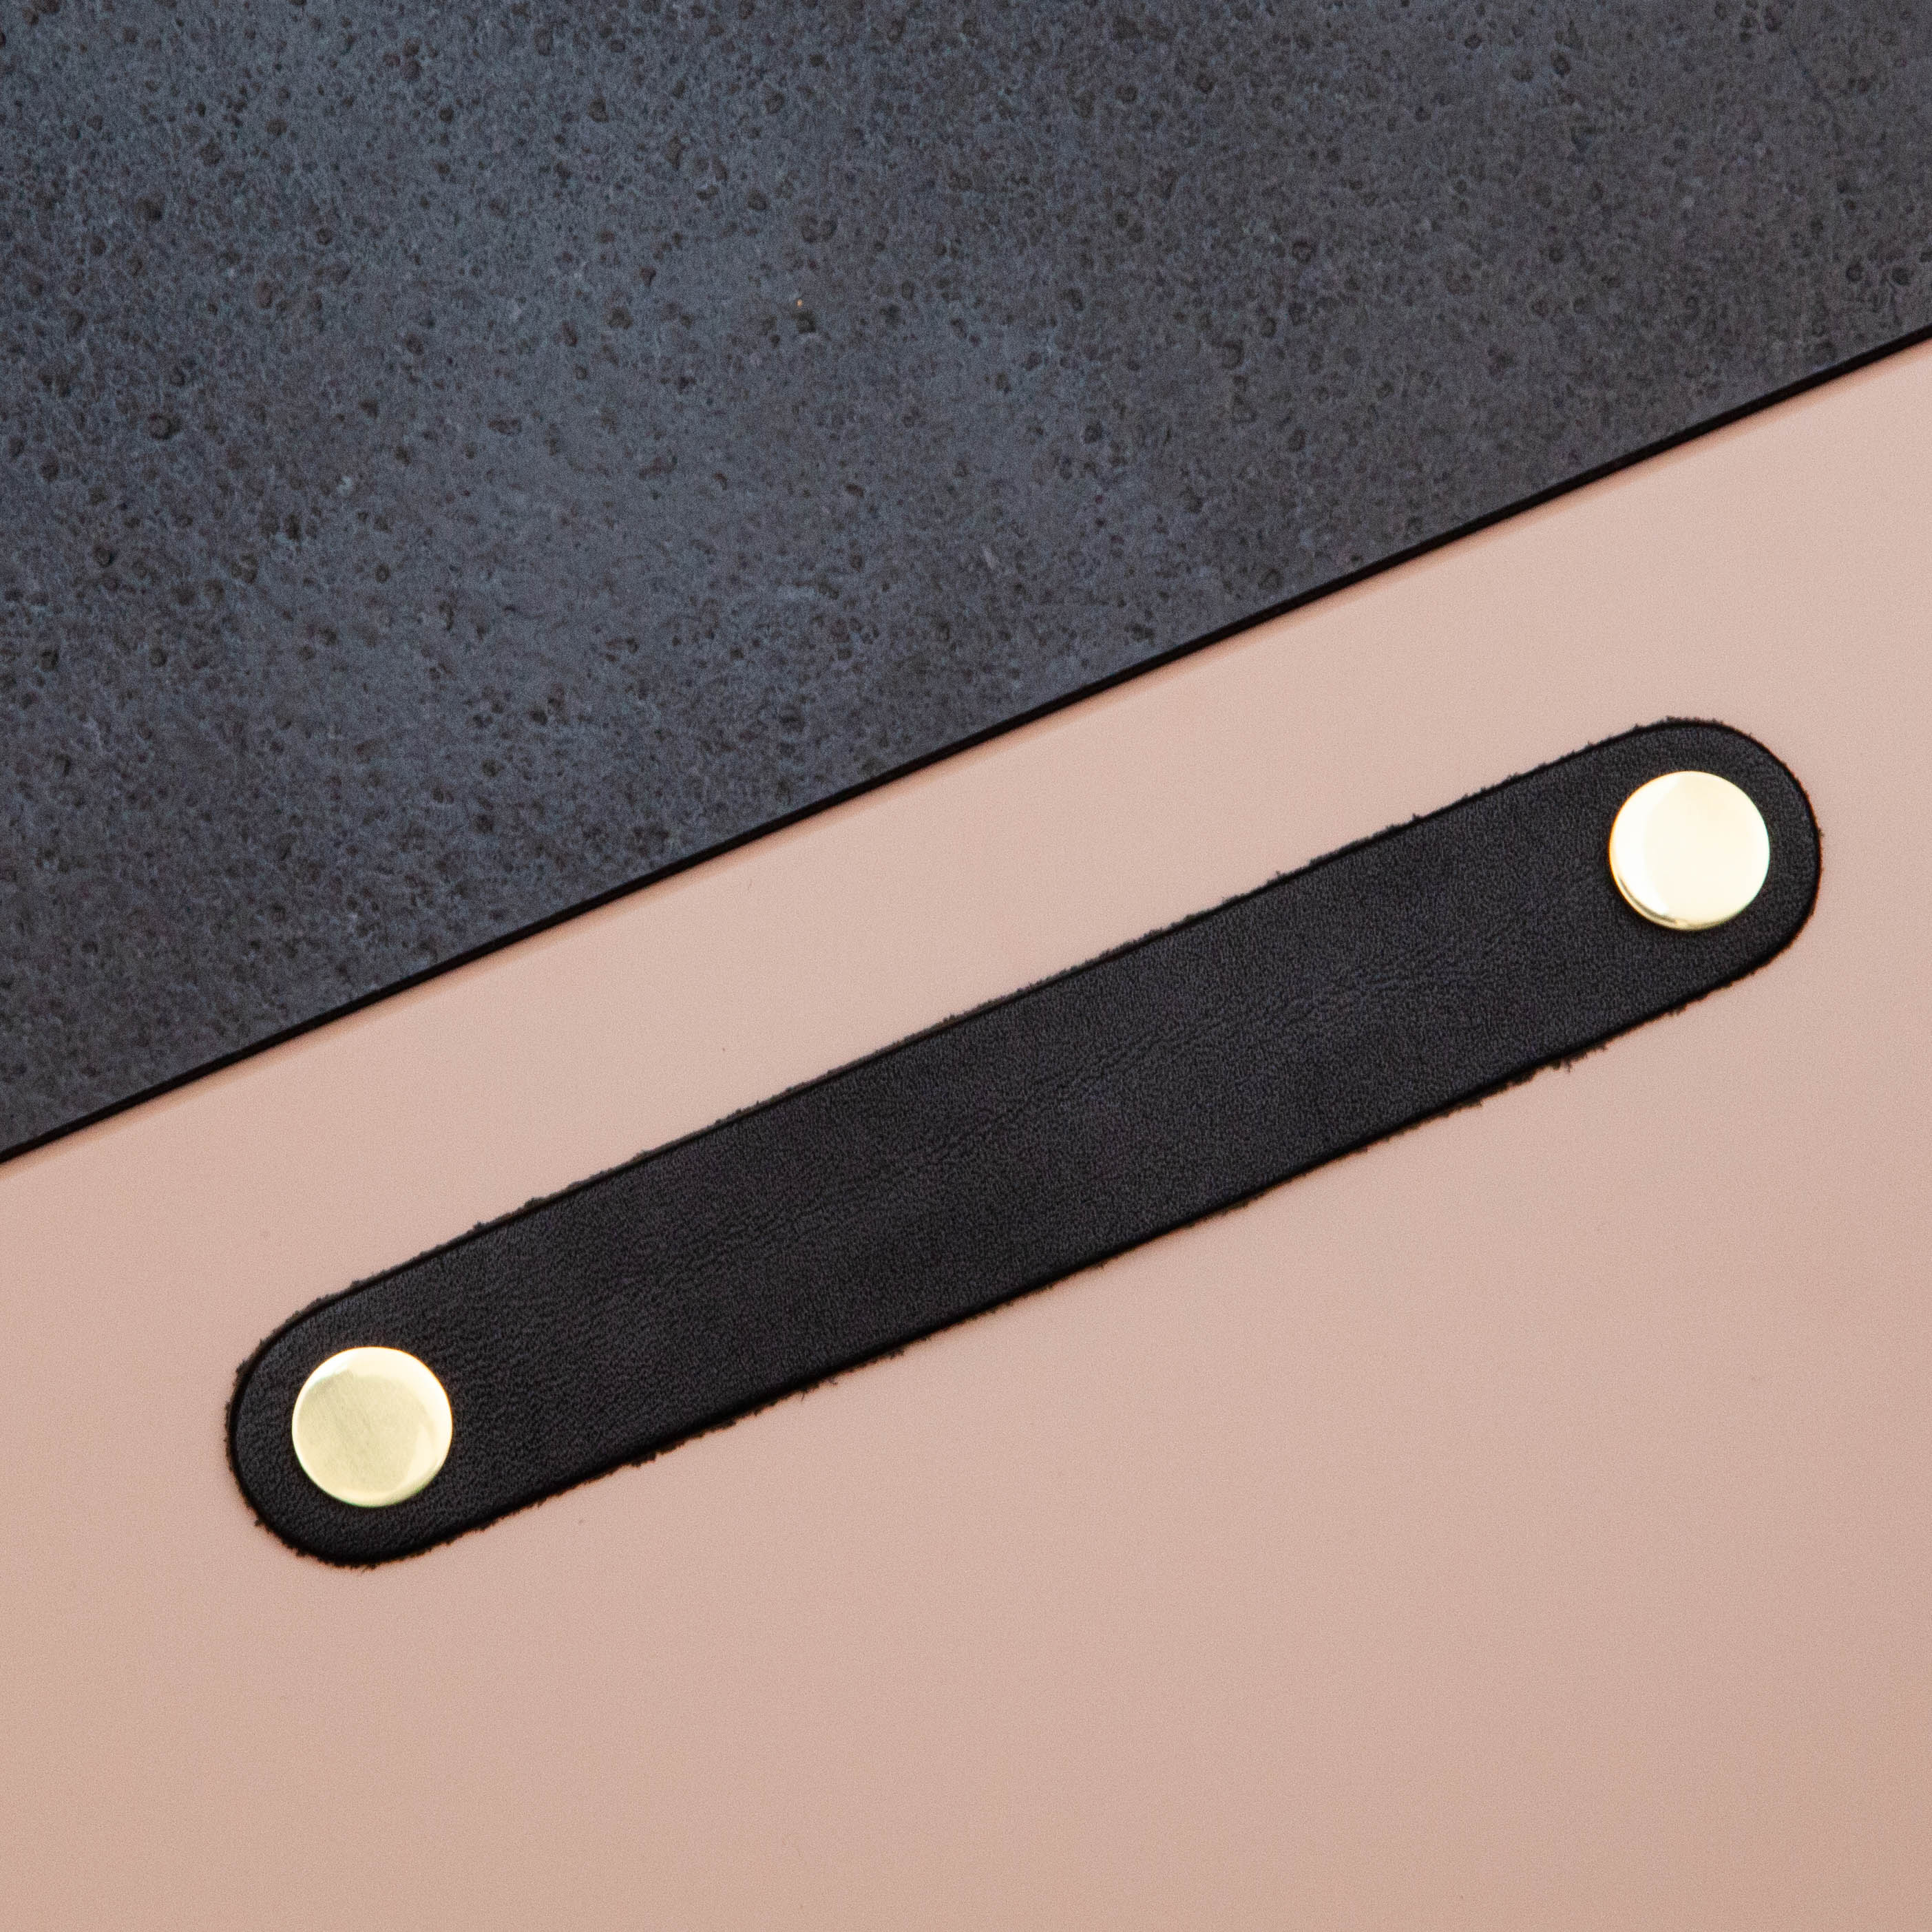 Poignée Poignée Loop Arrondie, couleur noir/laiton, ref 333261-11, dimensions 160 x 25 mm